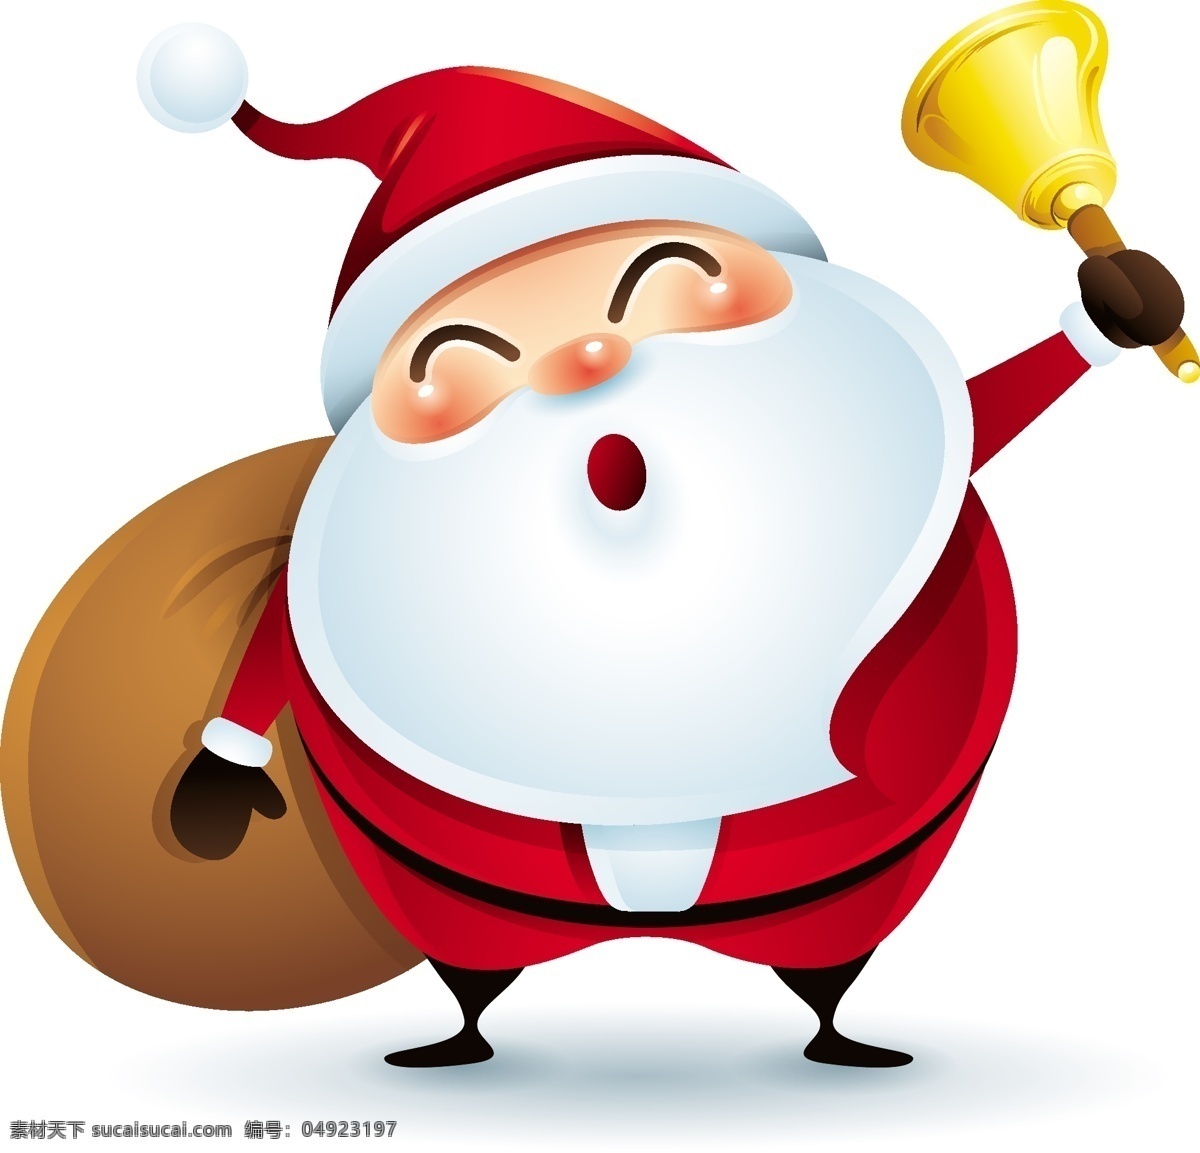 铃铛 圣诞节 老人 矢量 可爱 包裹 红色 白胡子 卡通 人物 形象 节日 装饰